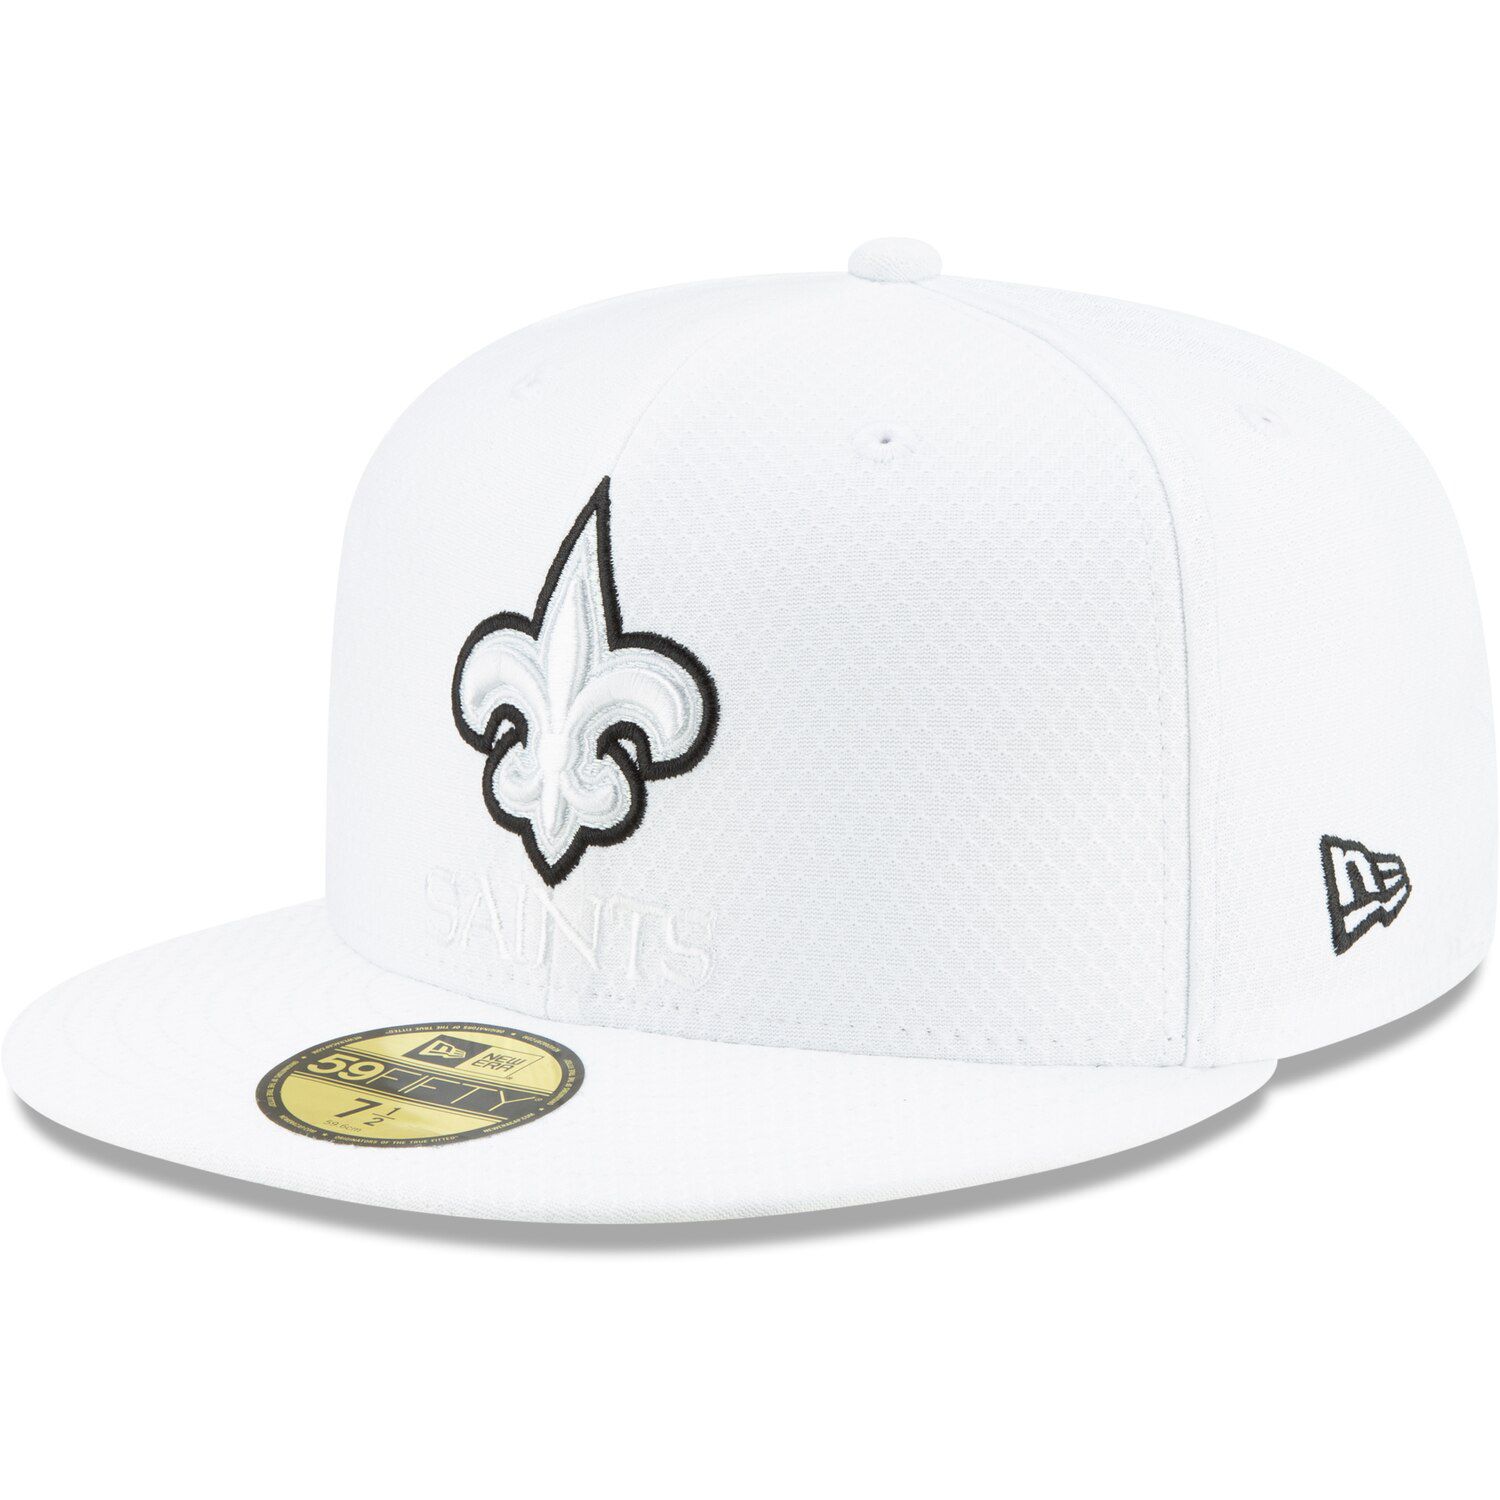 white new orleans saints hat